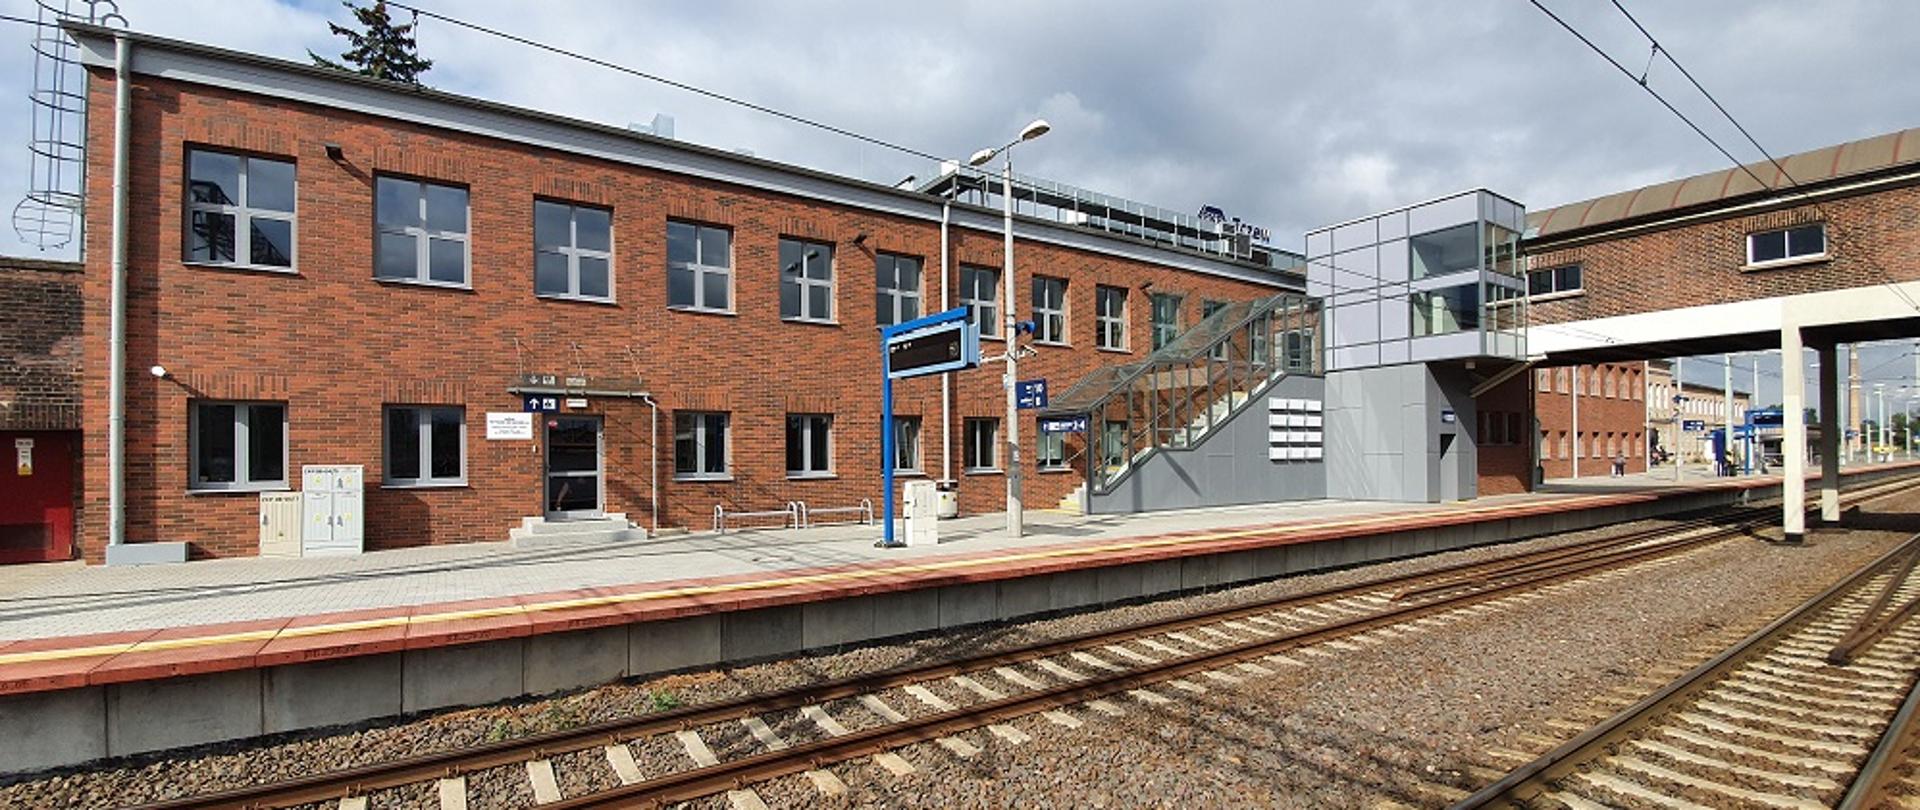 Na zdjęciu widoczny budynek dworca z ceglastą elewacją, peron oraz dwa tory, schody i windę.